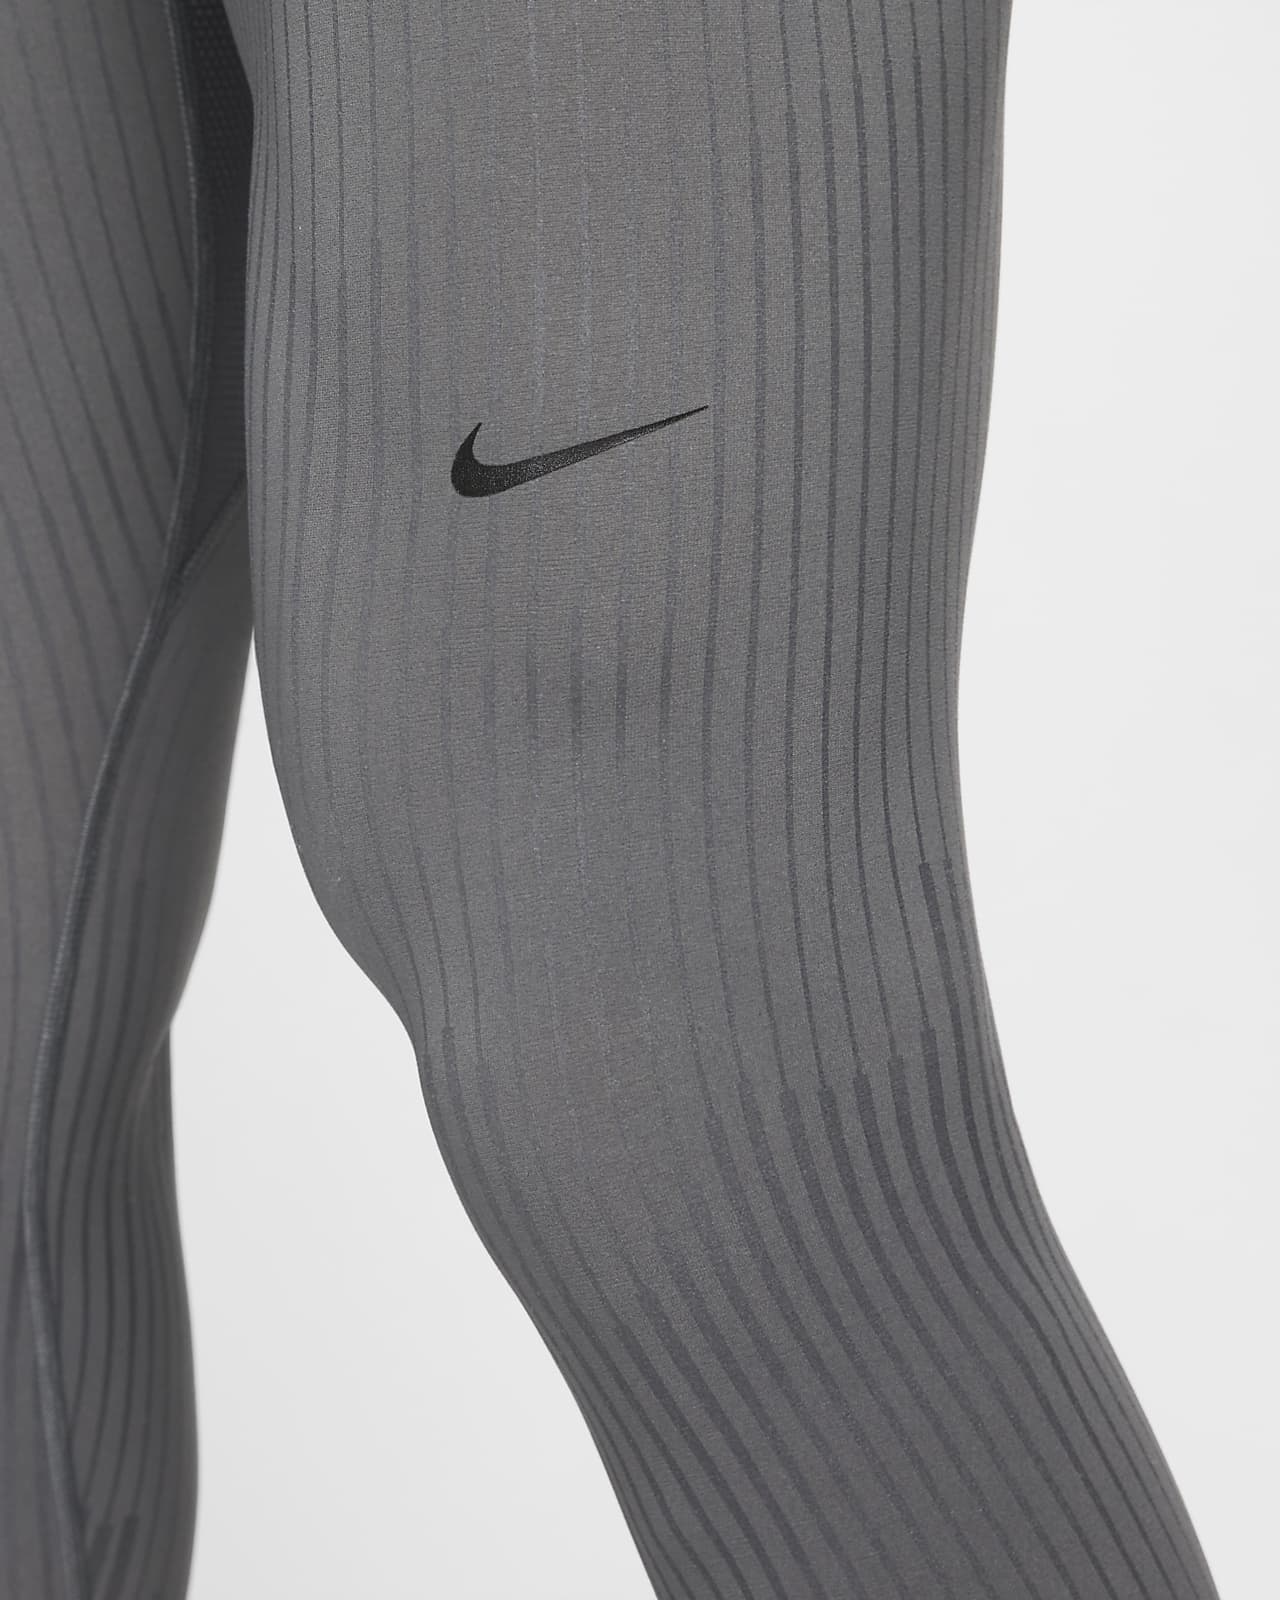 Men's Leggings & Tights. Nike CA